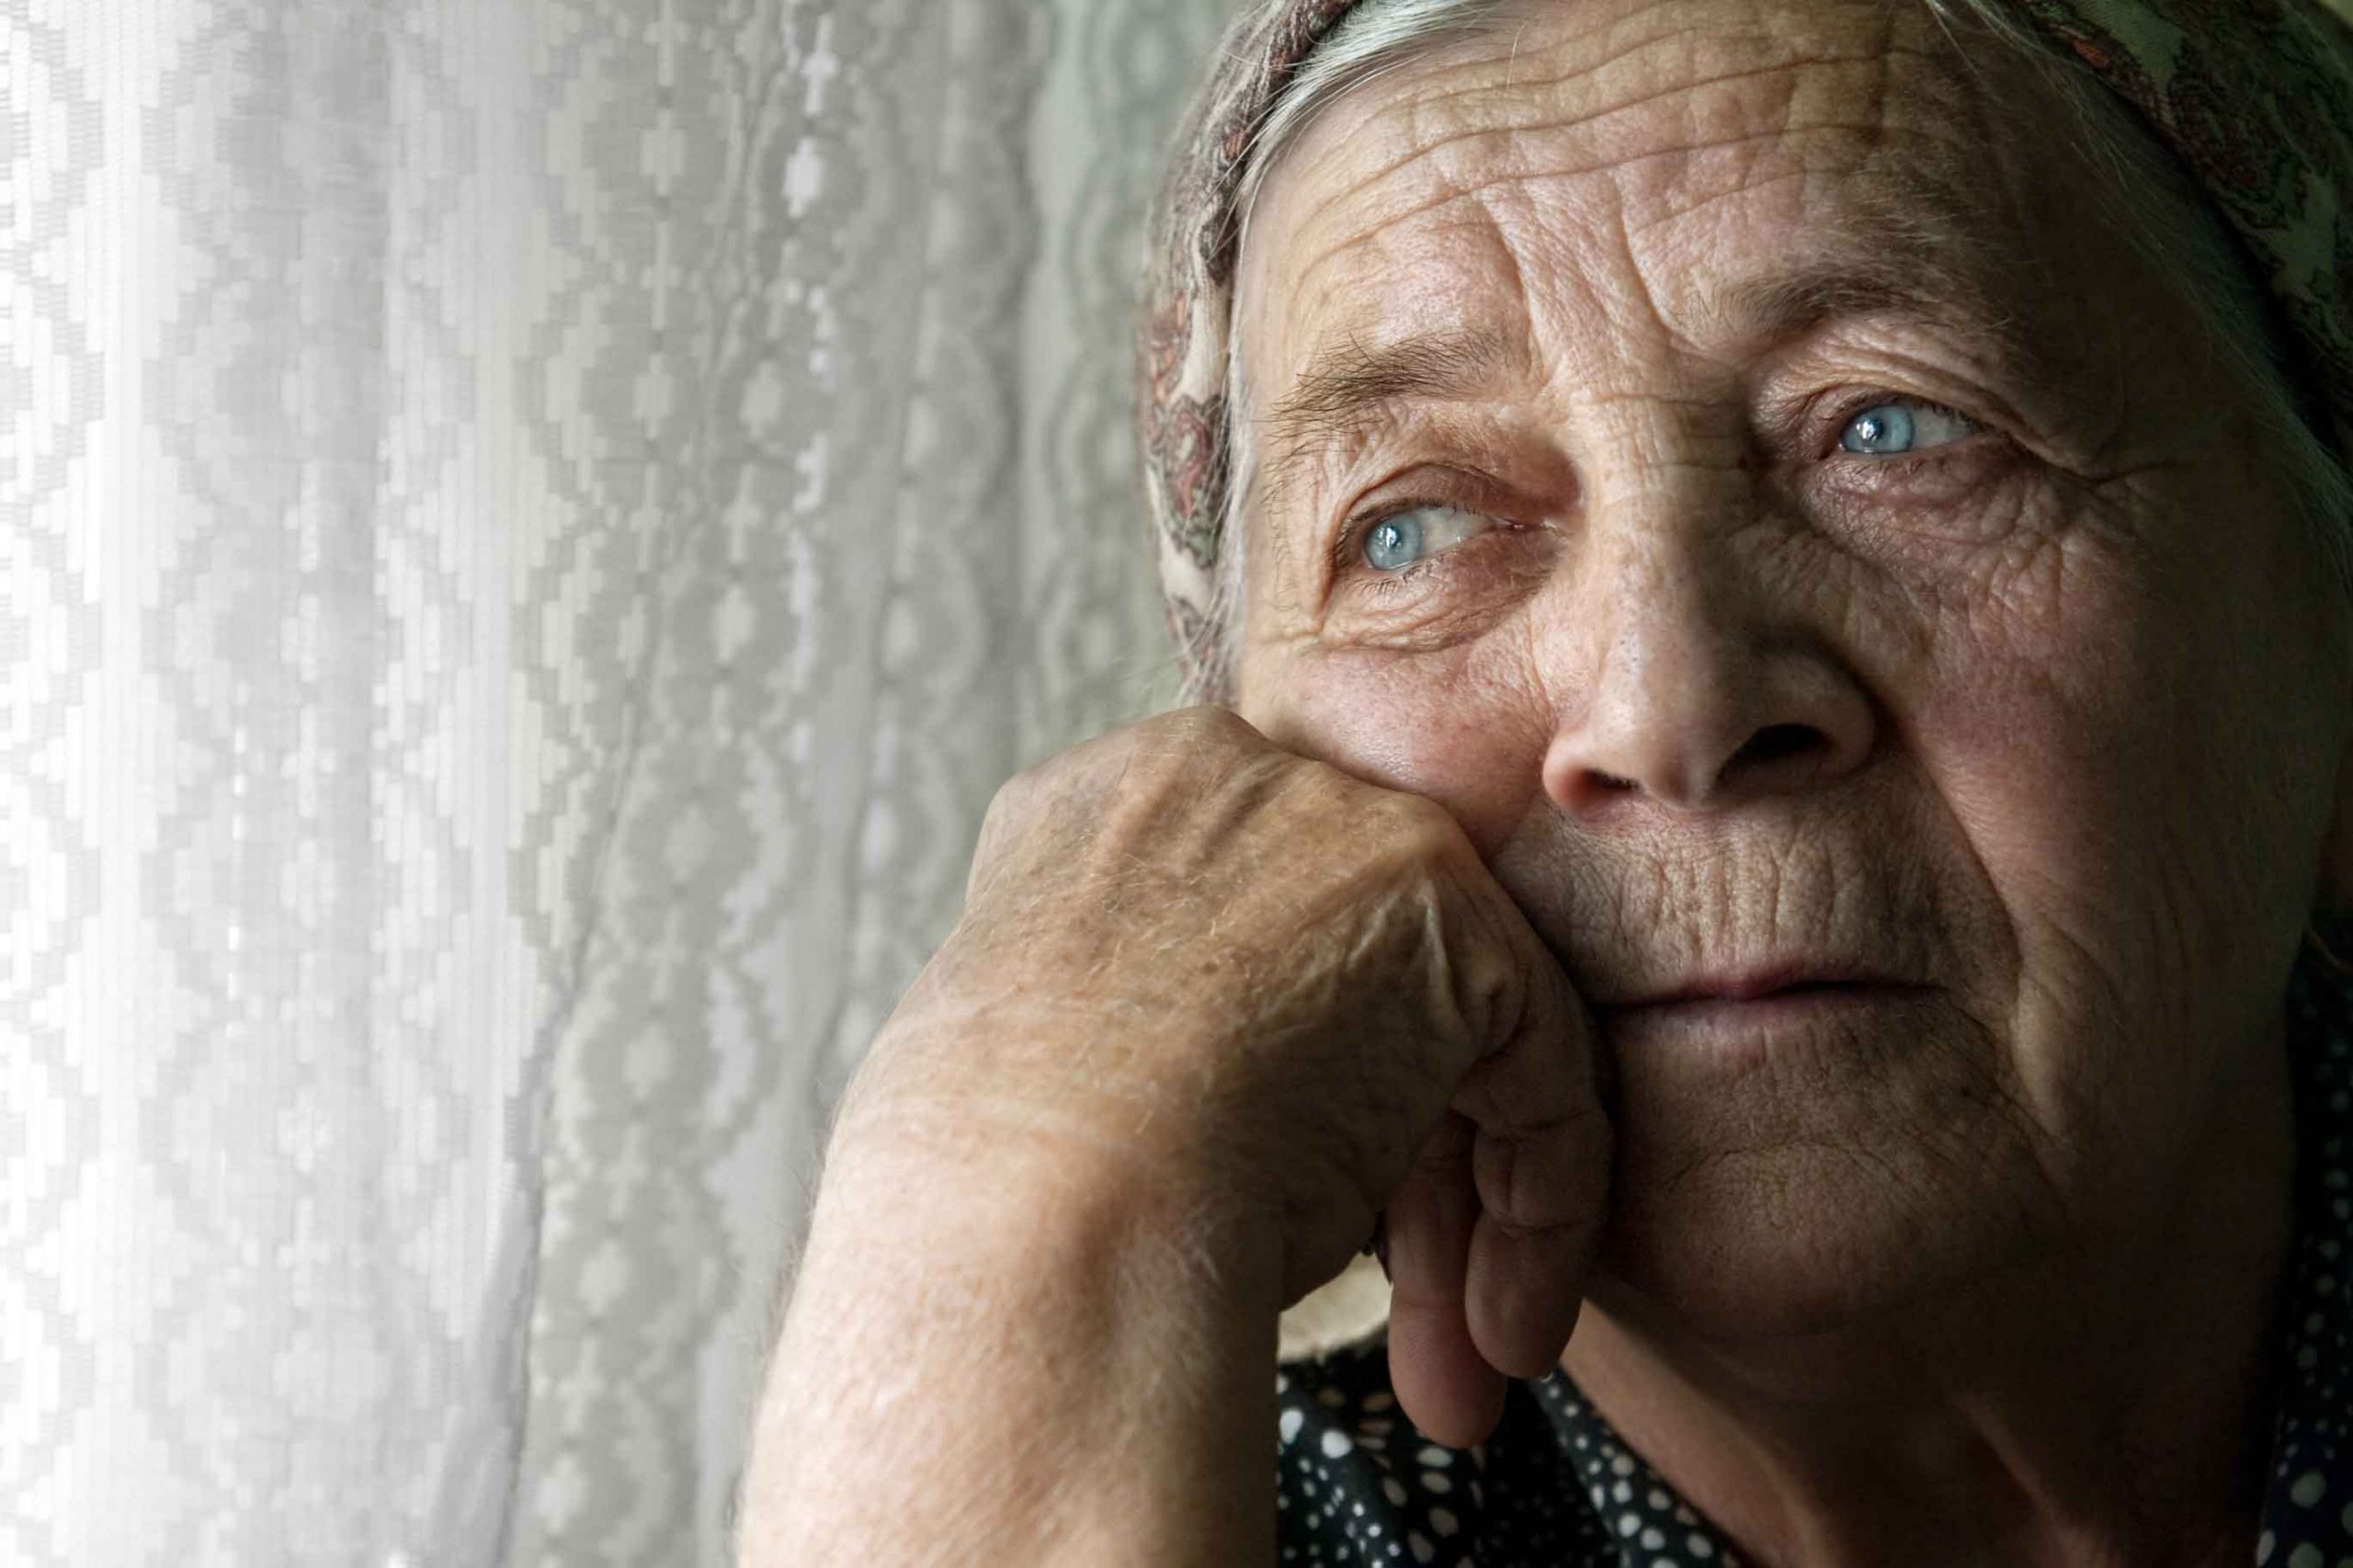 سلامت روان سالمندان در دوران کرونا | مرکز پارسیان مهرپرور